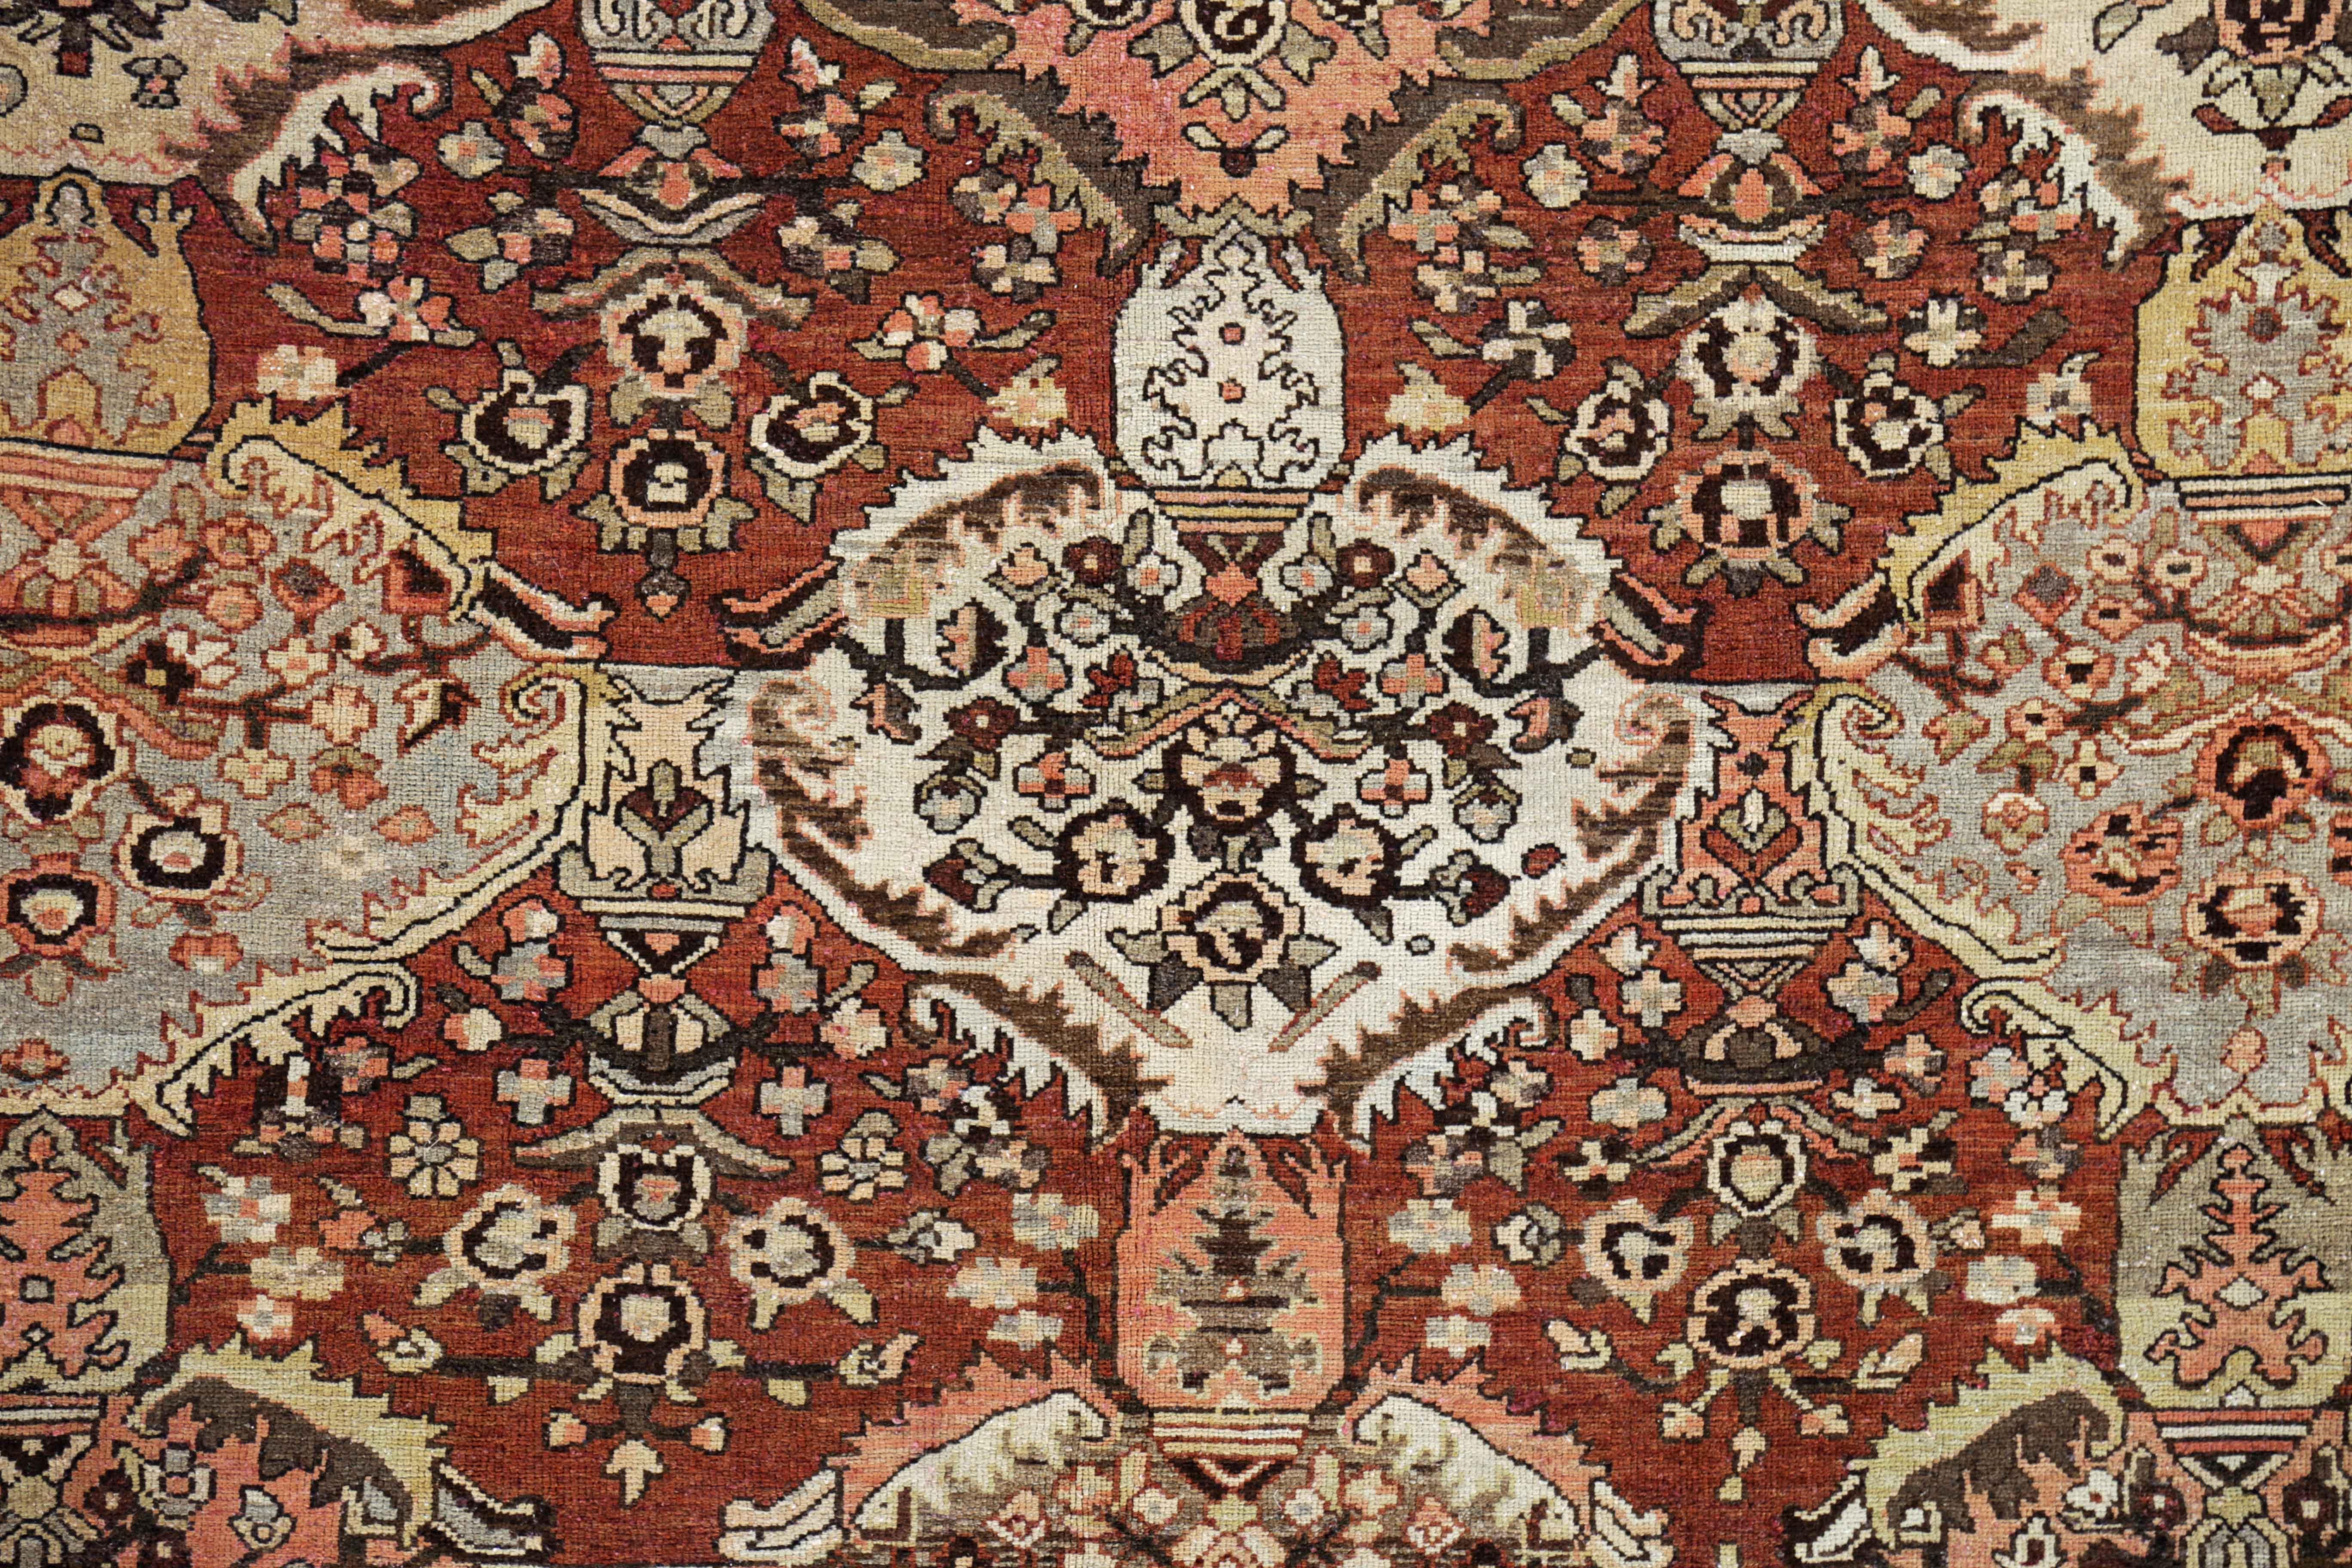 Other Antique Persian Square Rug Bakhtiar Design For Sale